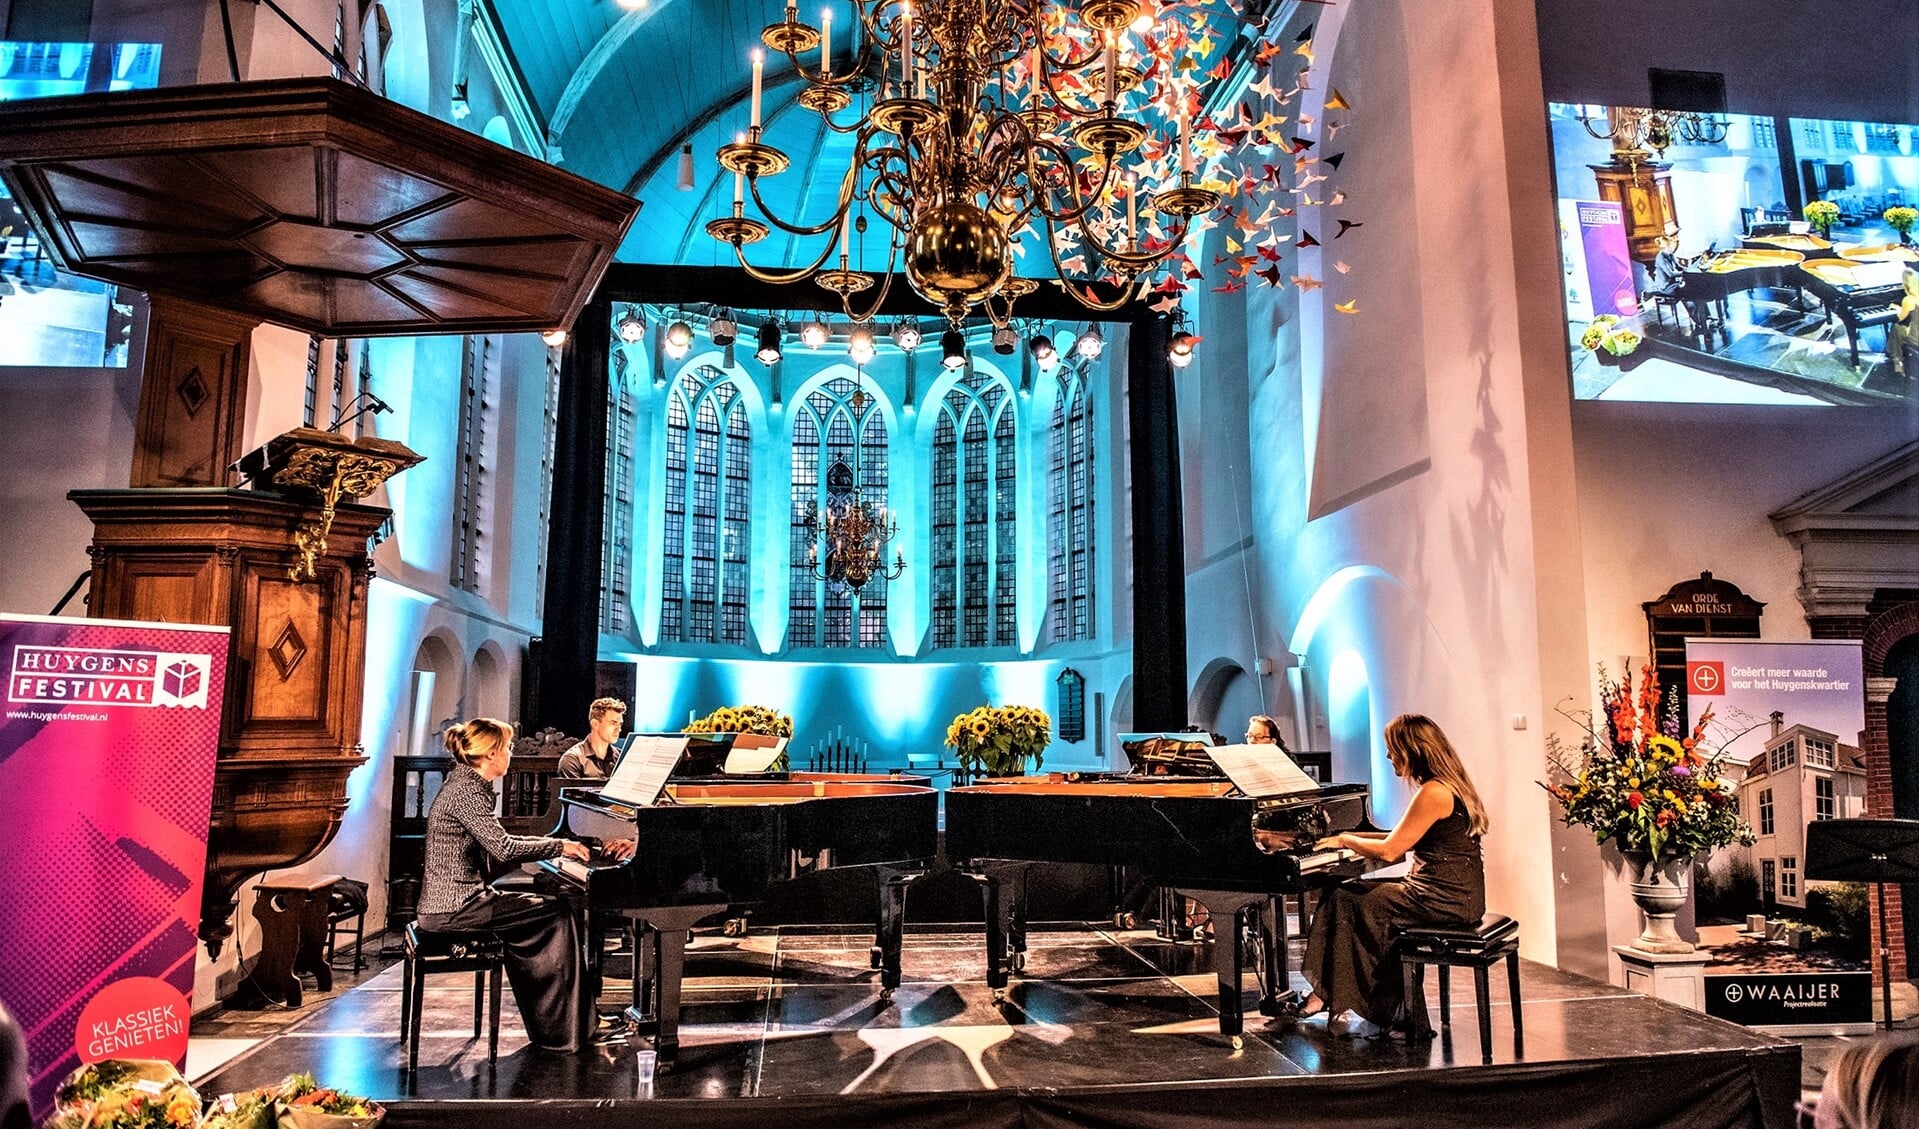 Het Rondane Kwartet in de Oude Kerk tijdens een eerdere editie van het Huygens Festival (foto: Michel Groen).